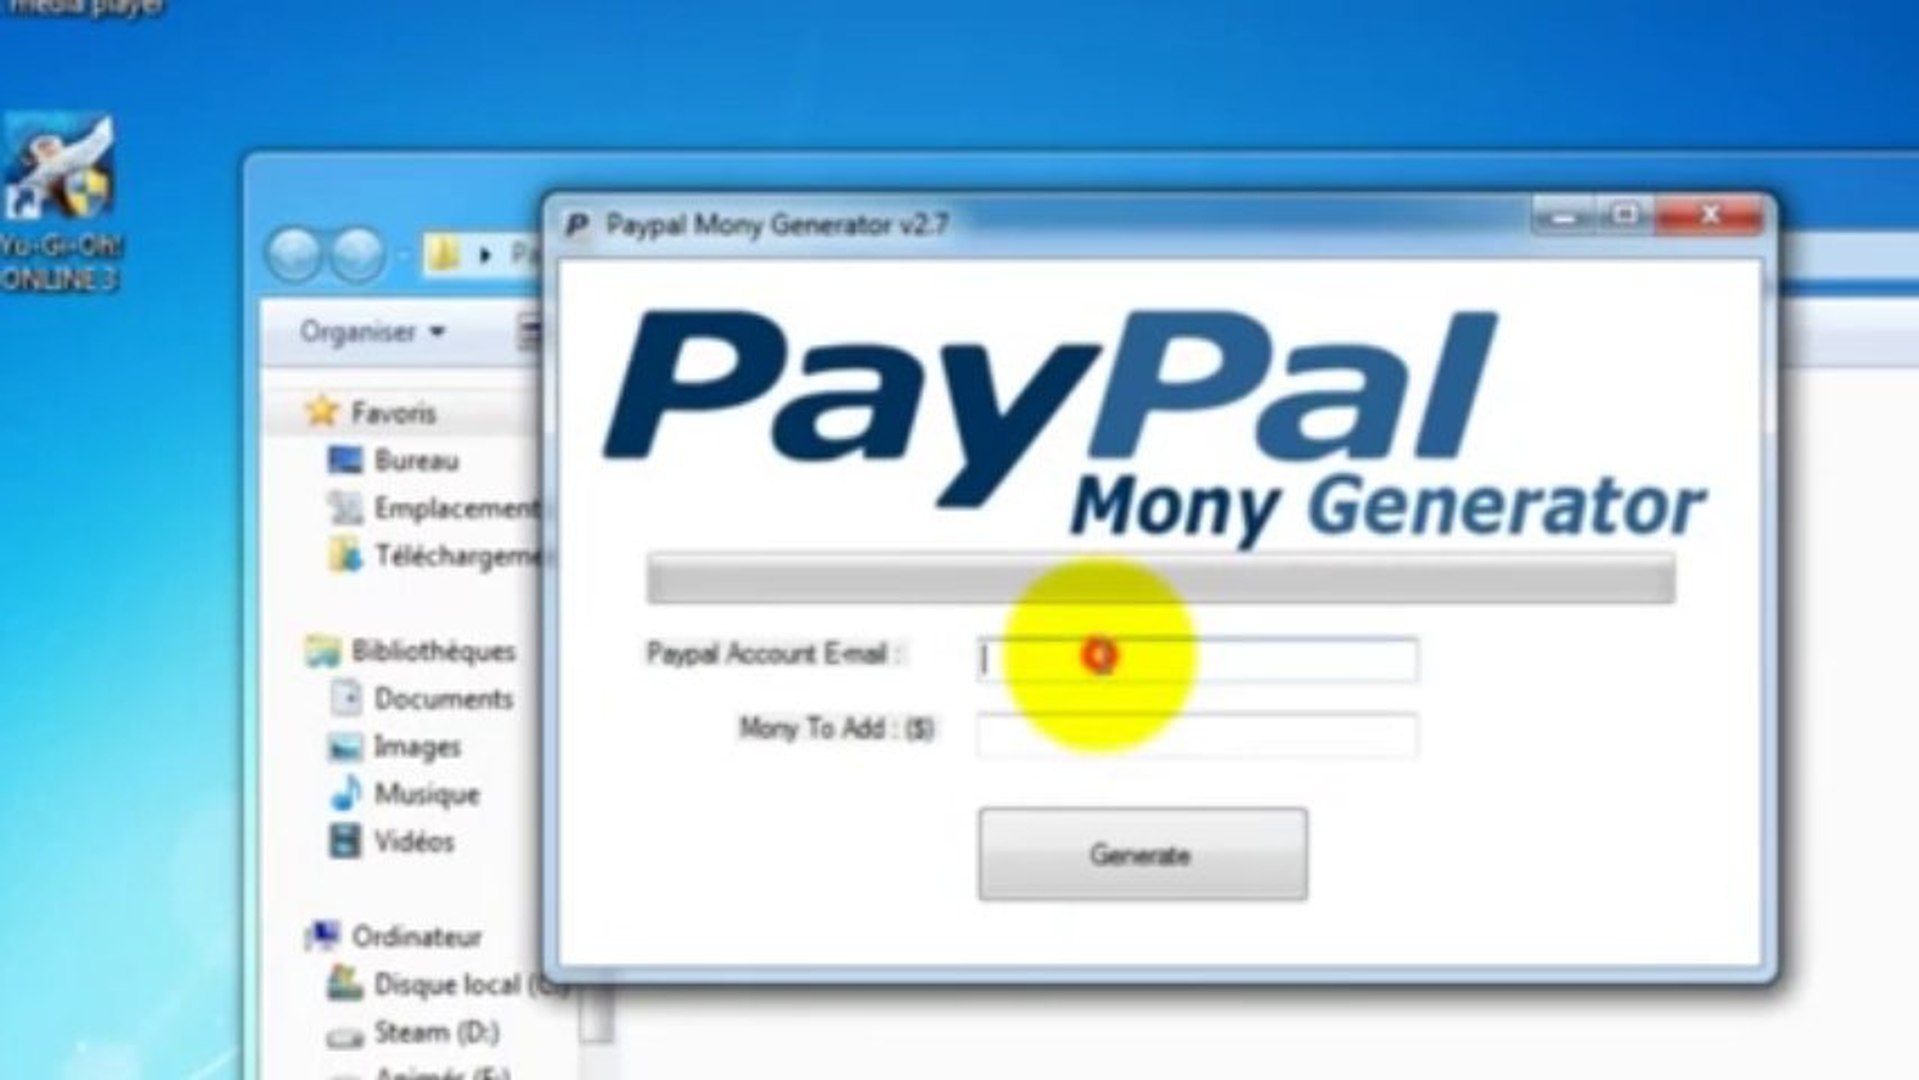 Paypal Money Generator V2.7 - video Dailymotion